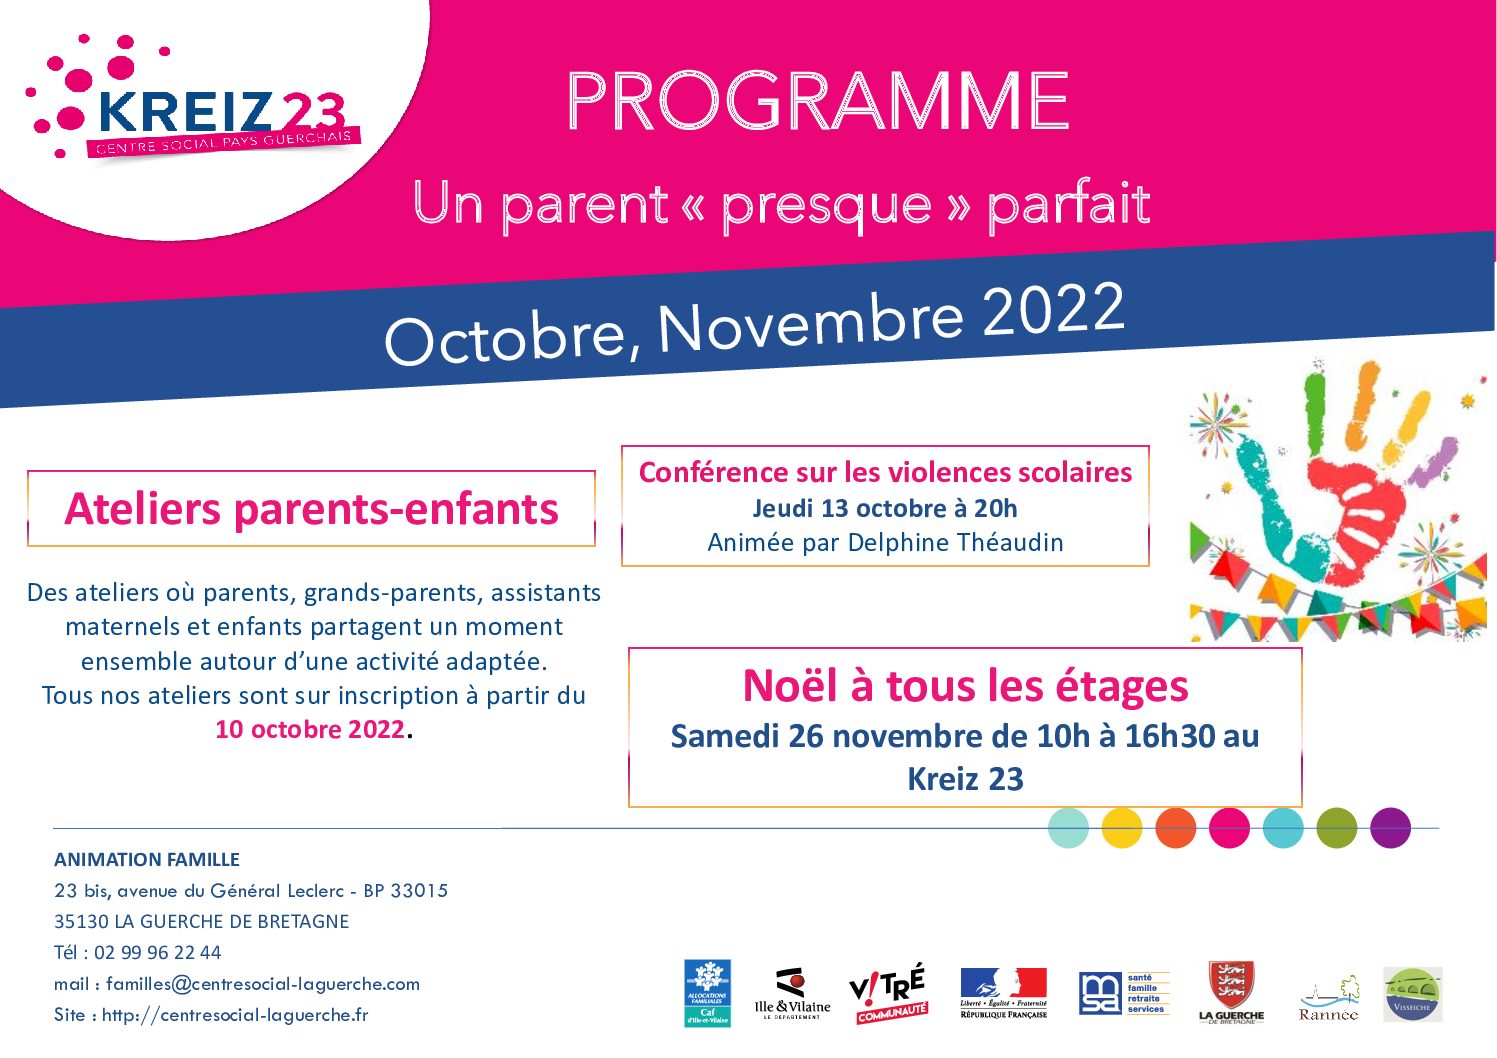 Programme Un parent « presque » parfait OCTOBRE -NOVEMBRE 2022